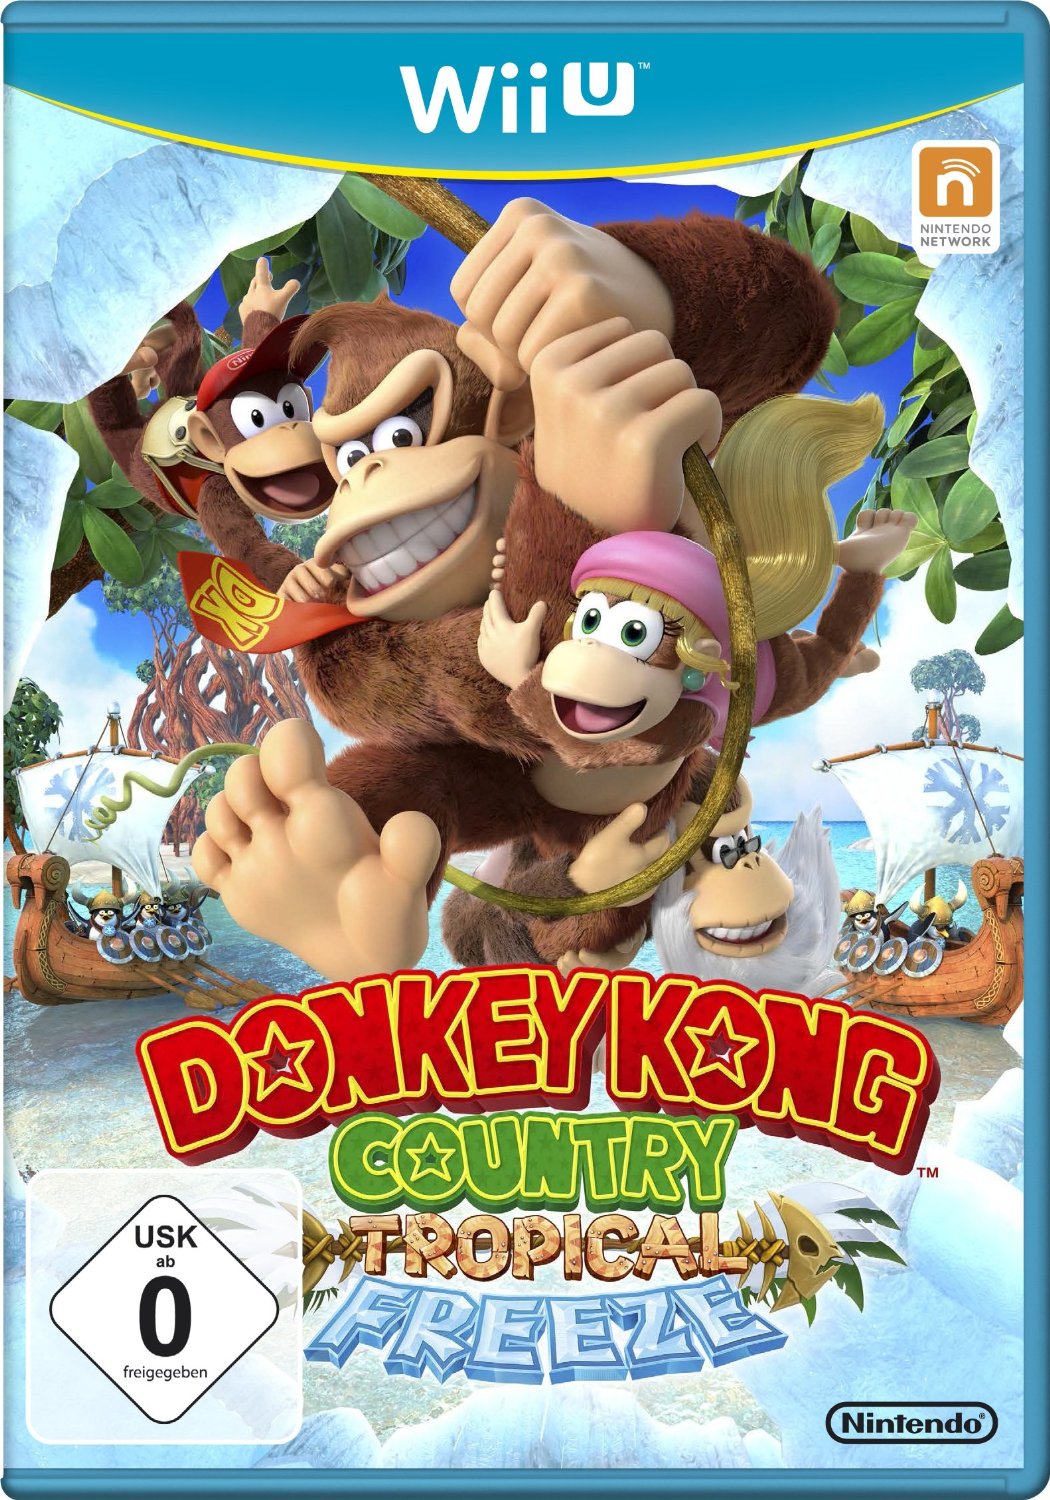 Donkey Kong und andere Affen, die sich an einer Liane entlang schwingen.